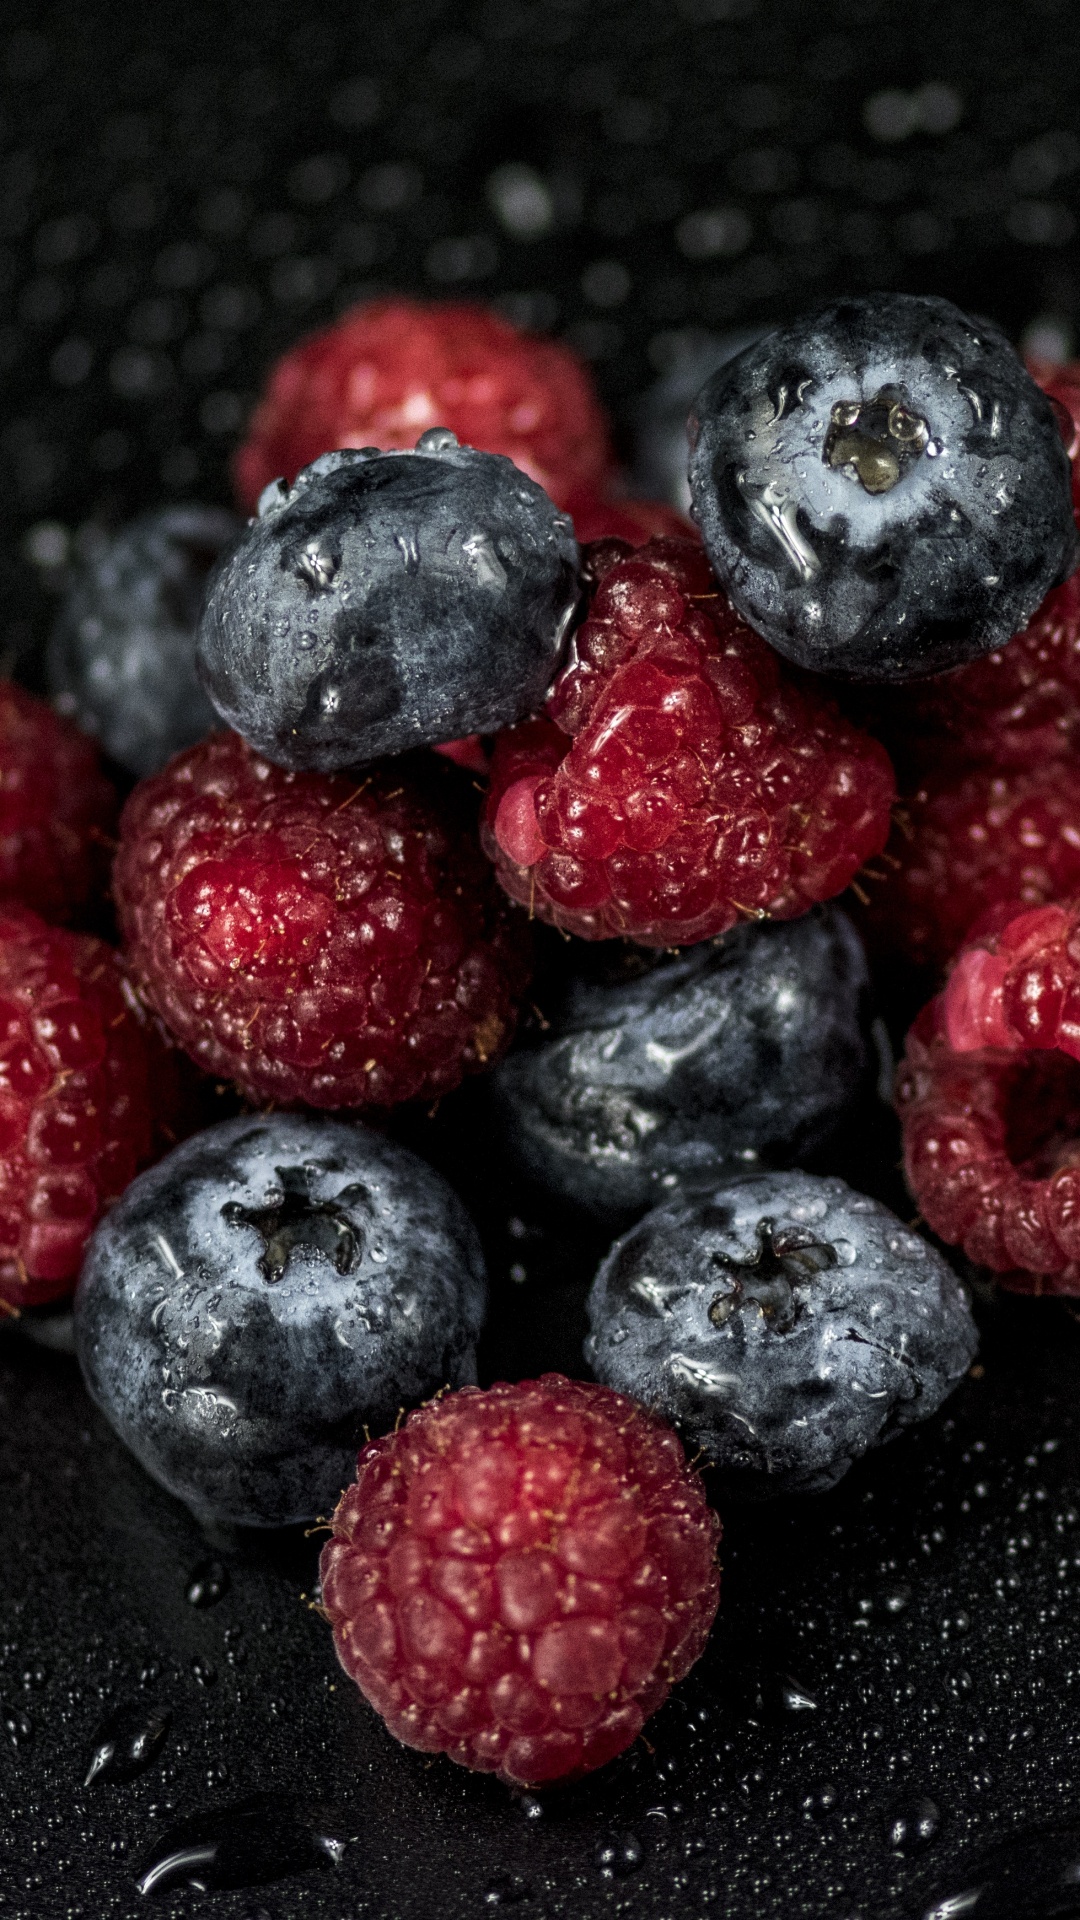 蓝莓, 树莓, 红树莓, 食品, 超级 壁纸 1080x1920 允许